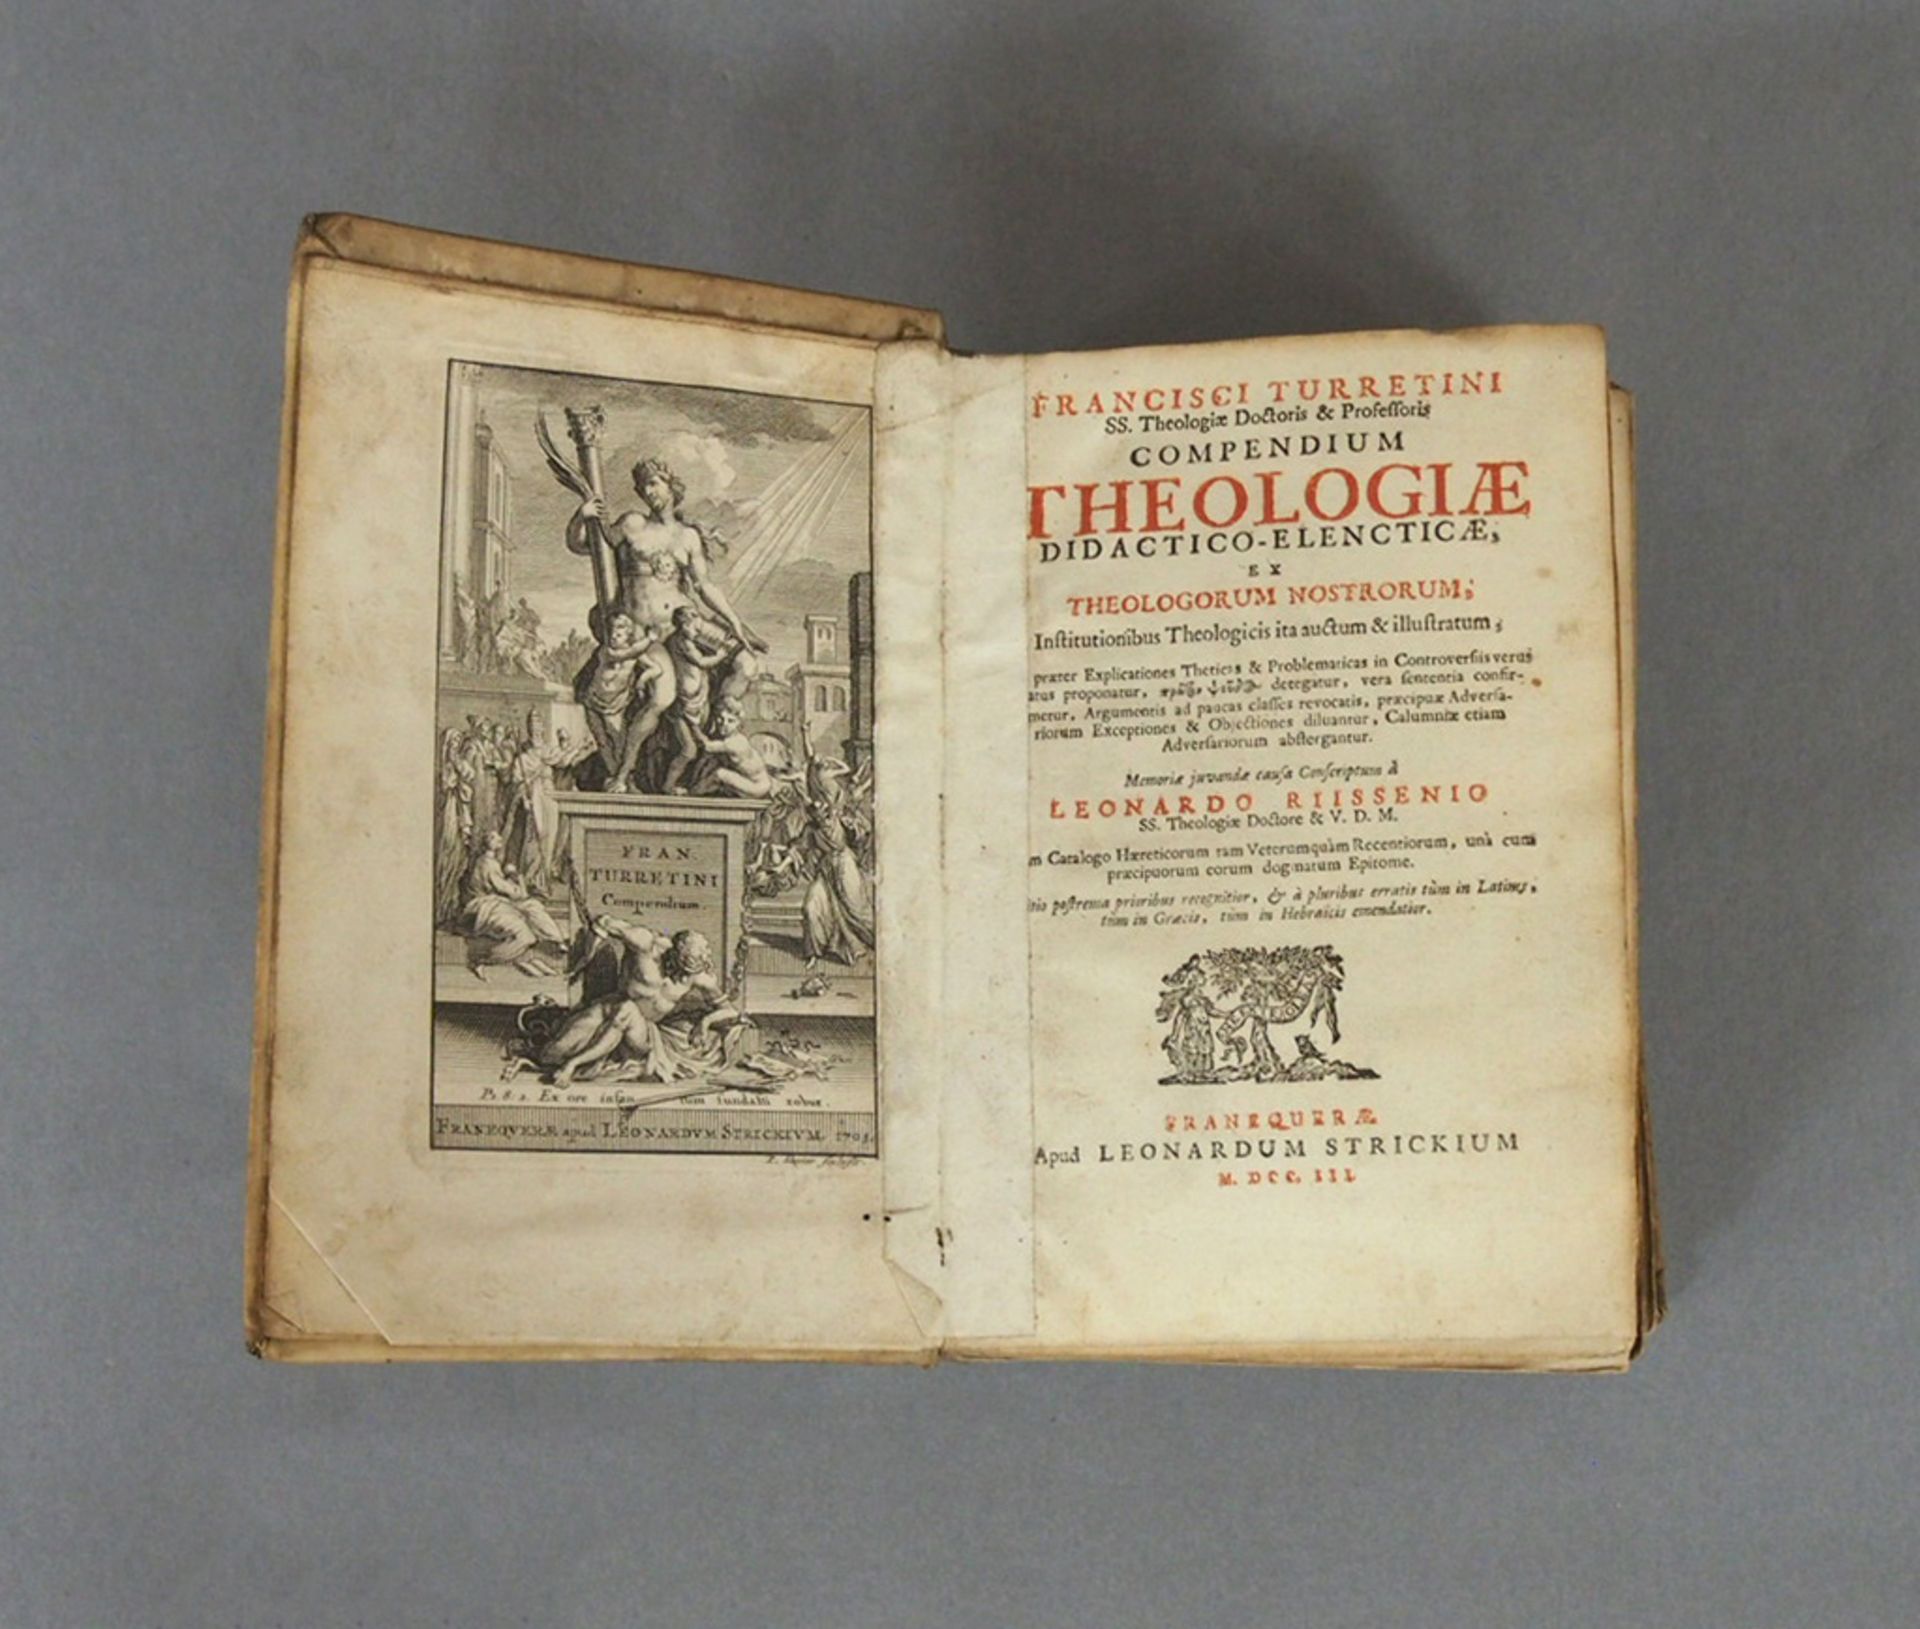 TURRETTINI, Francois: Compendium theologiae didactico-elencticae ex theologorum nostrorum